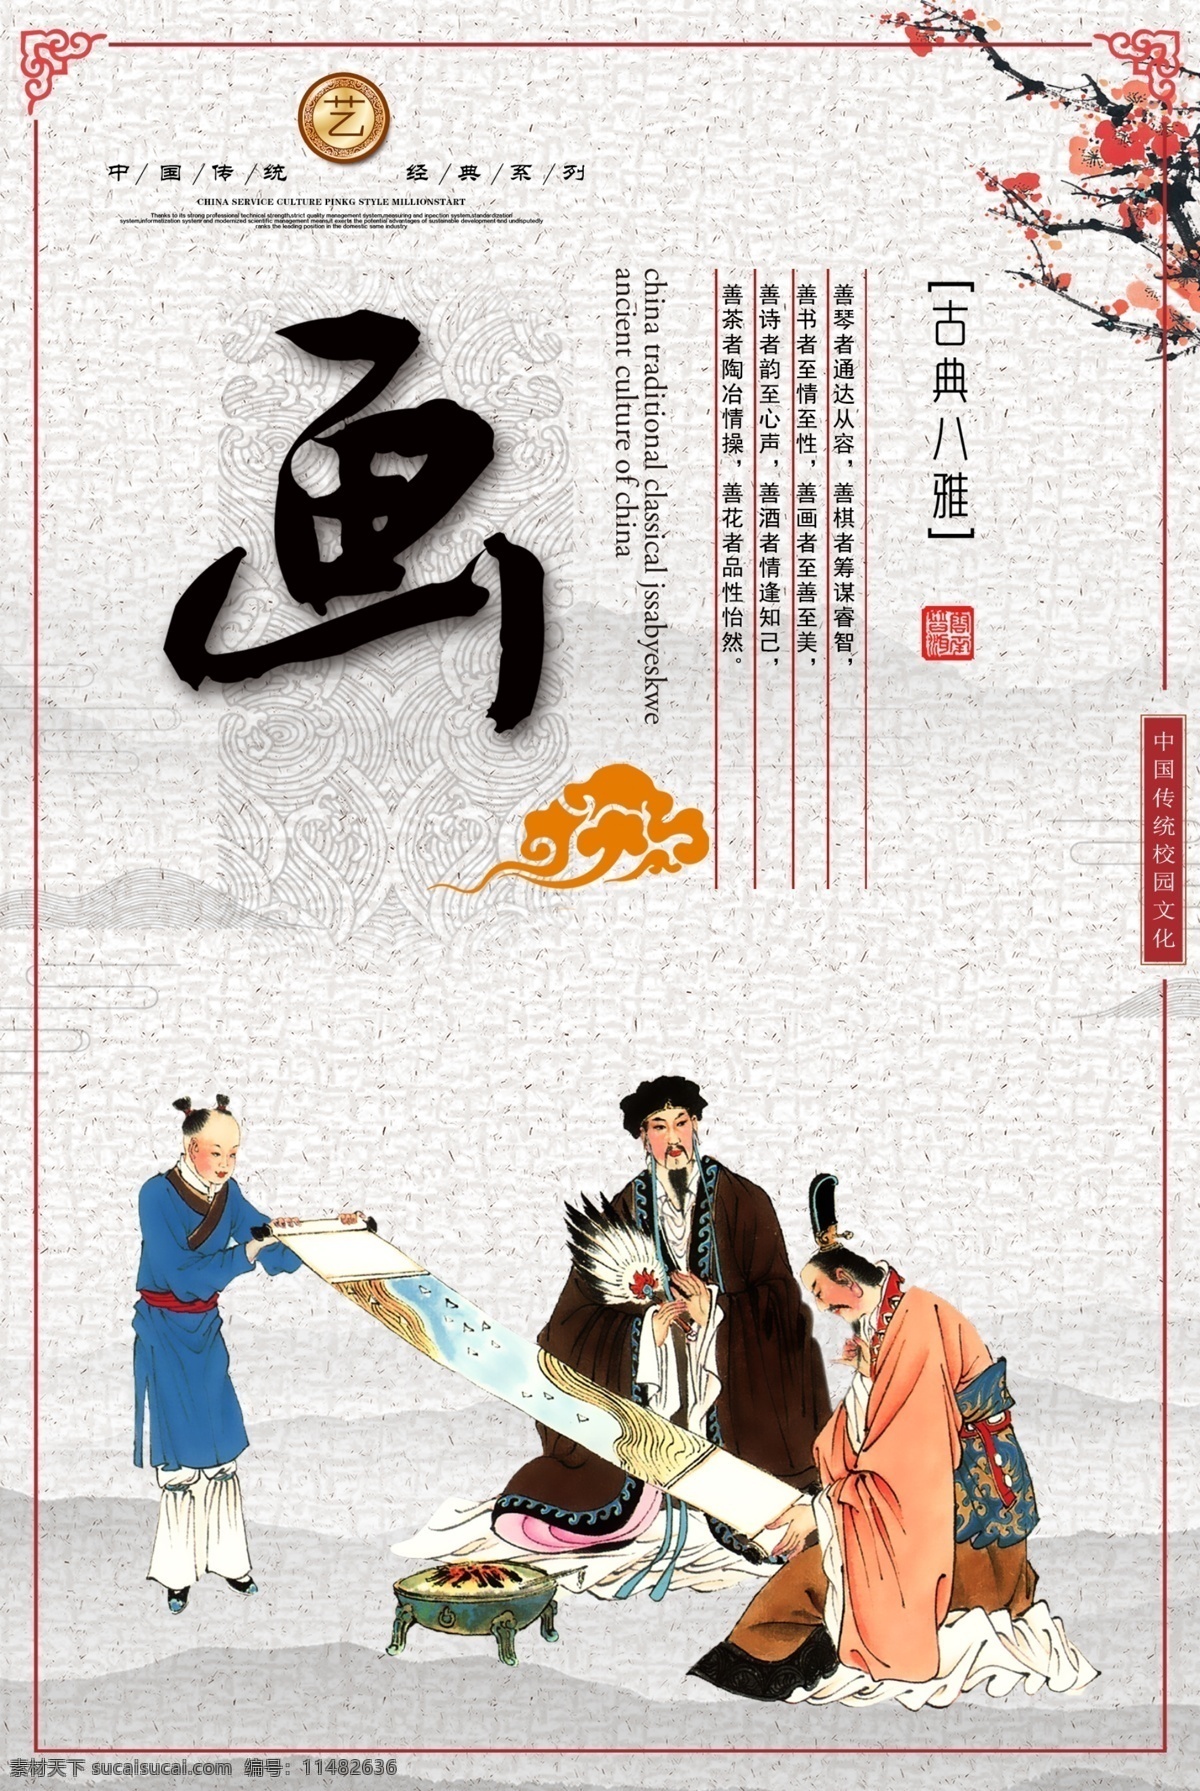 中国 传统文化 系列 展板 中国传统文化 茶文化 画文化 诗文化 文化系列展板 中国风 传统 分层